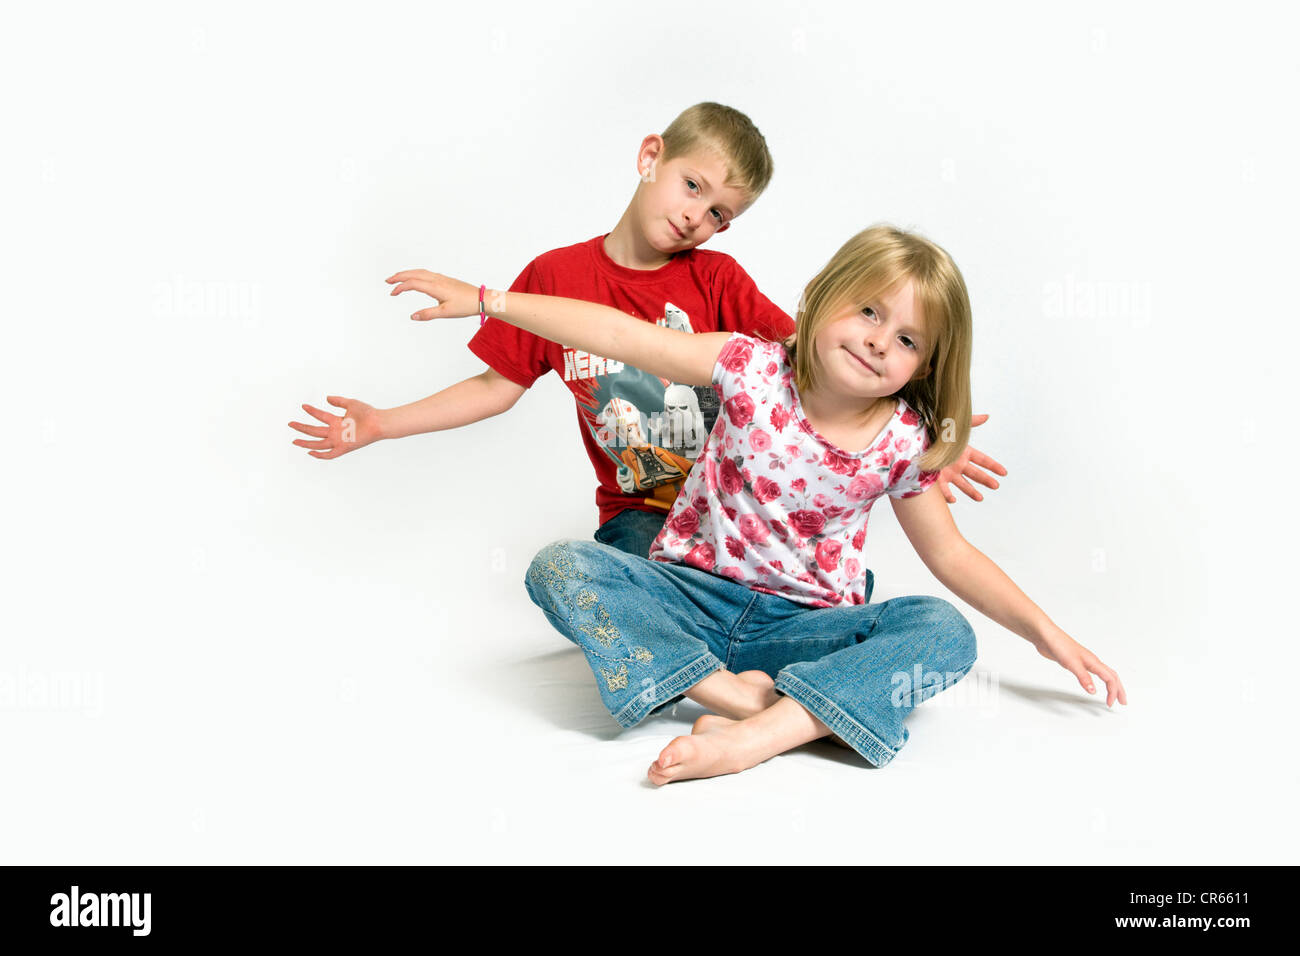 Zwei kaukasischen Kinder, Bruder und Schwester, die Spaß (7 Jahre altes Mädchen und 8 Jahre alt) auf einem weißen Hintergrund Stockfoto